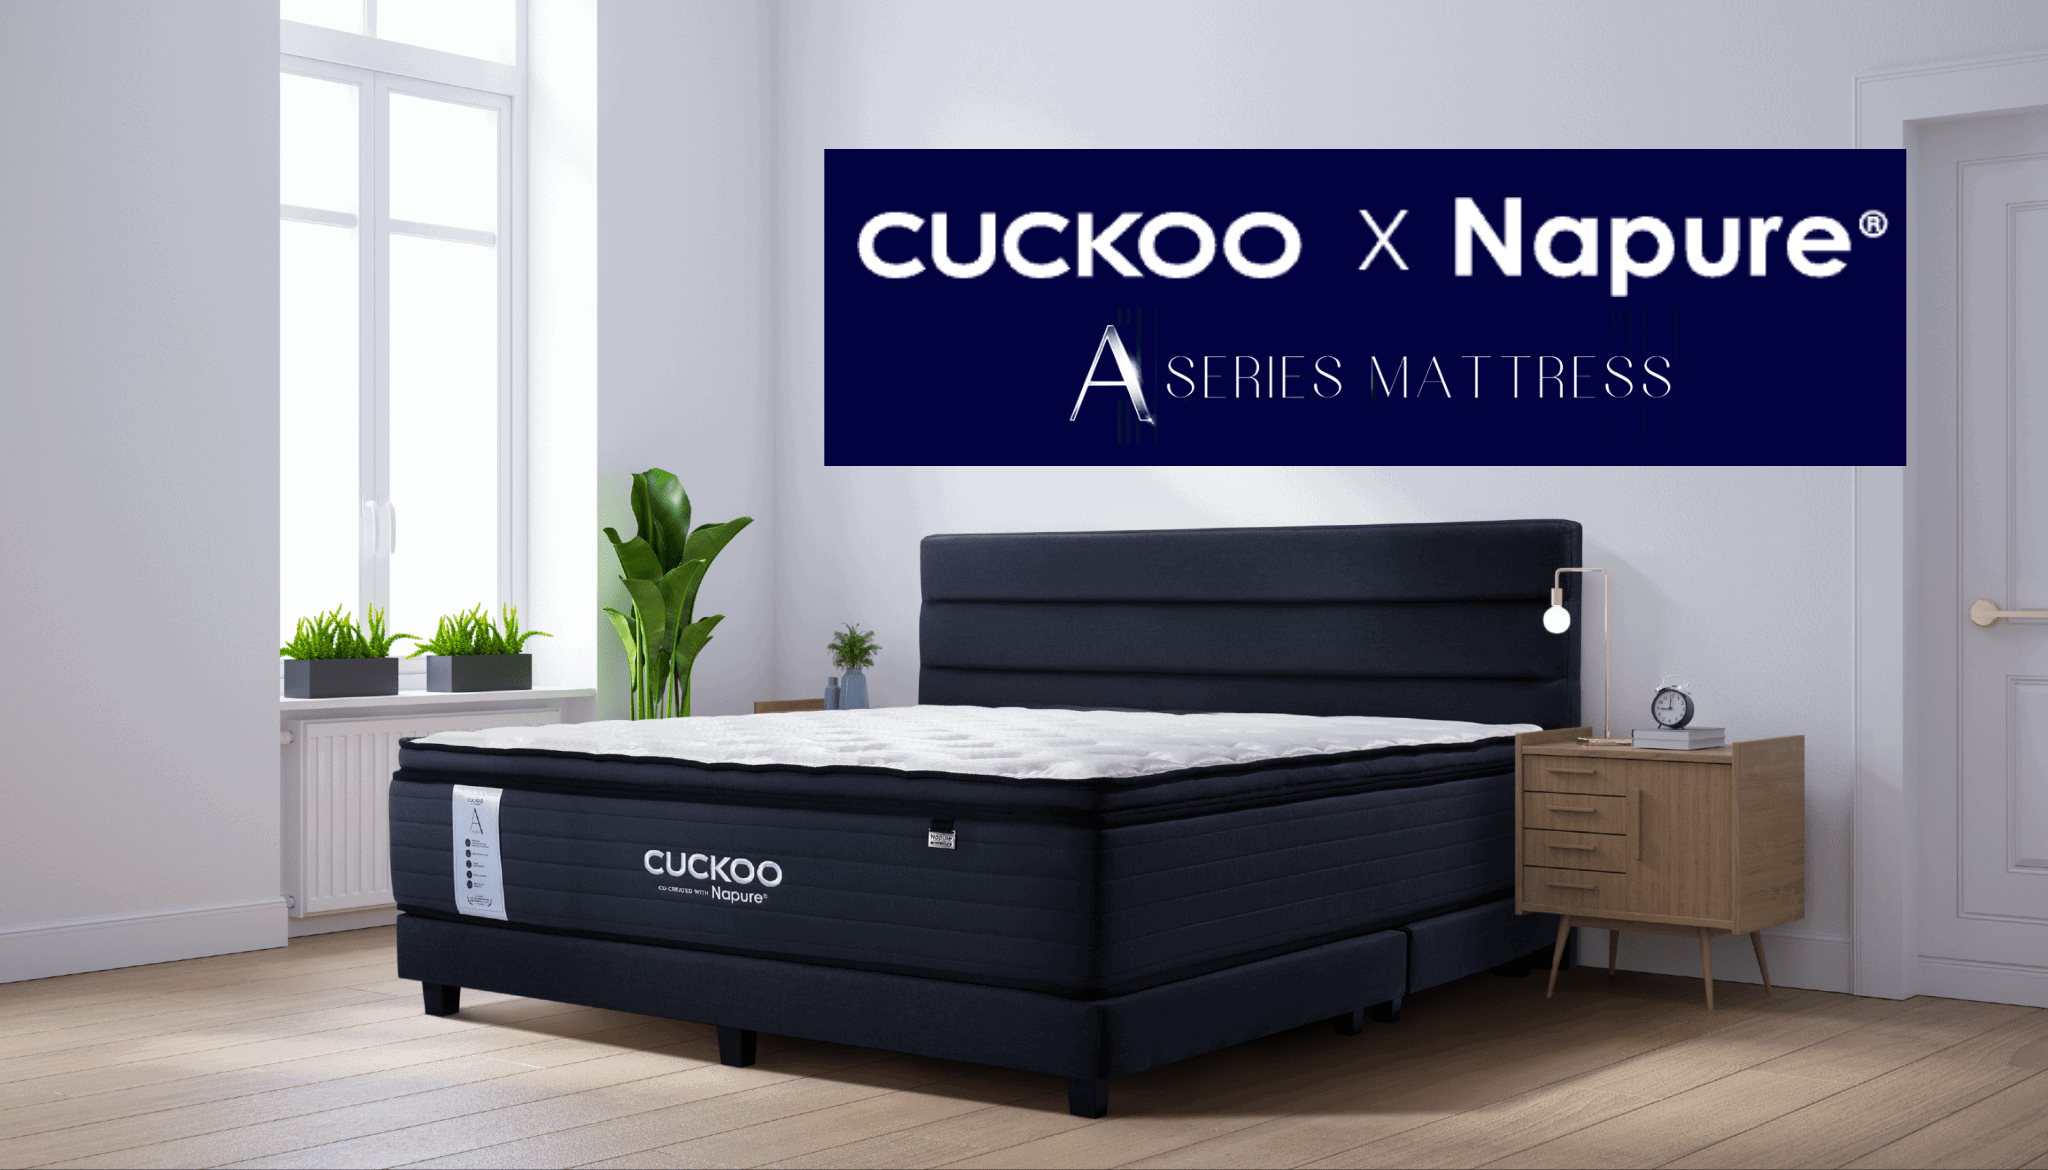 cuckoo x napure mattress